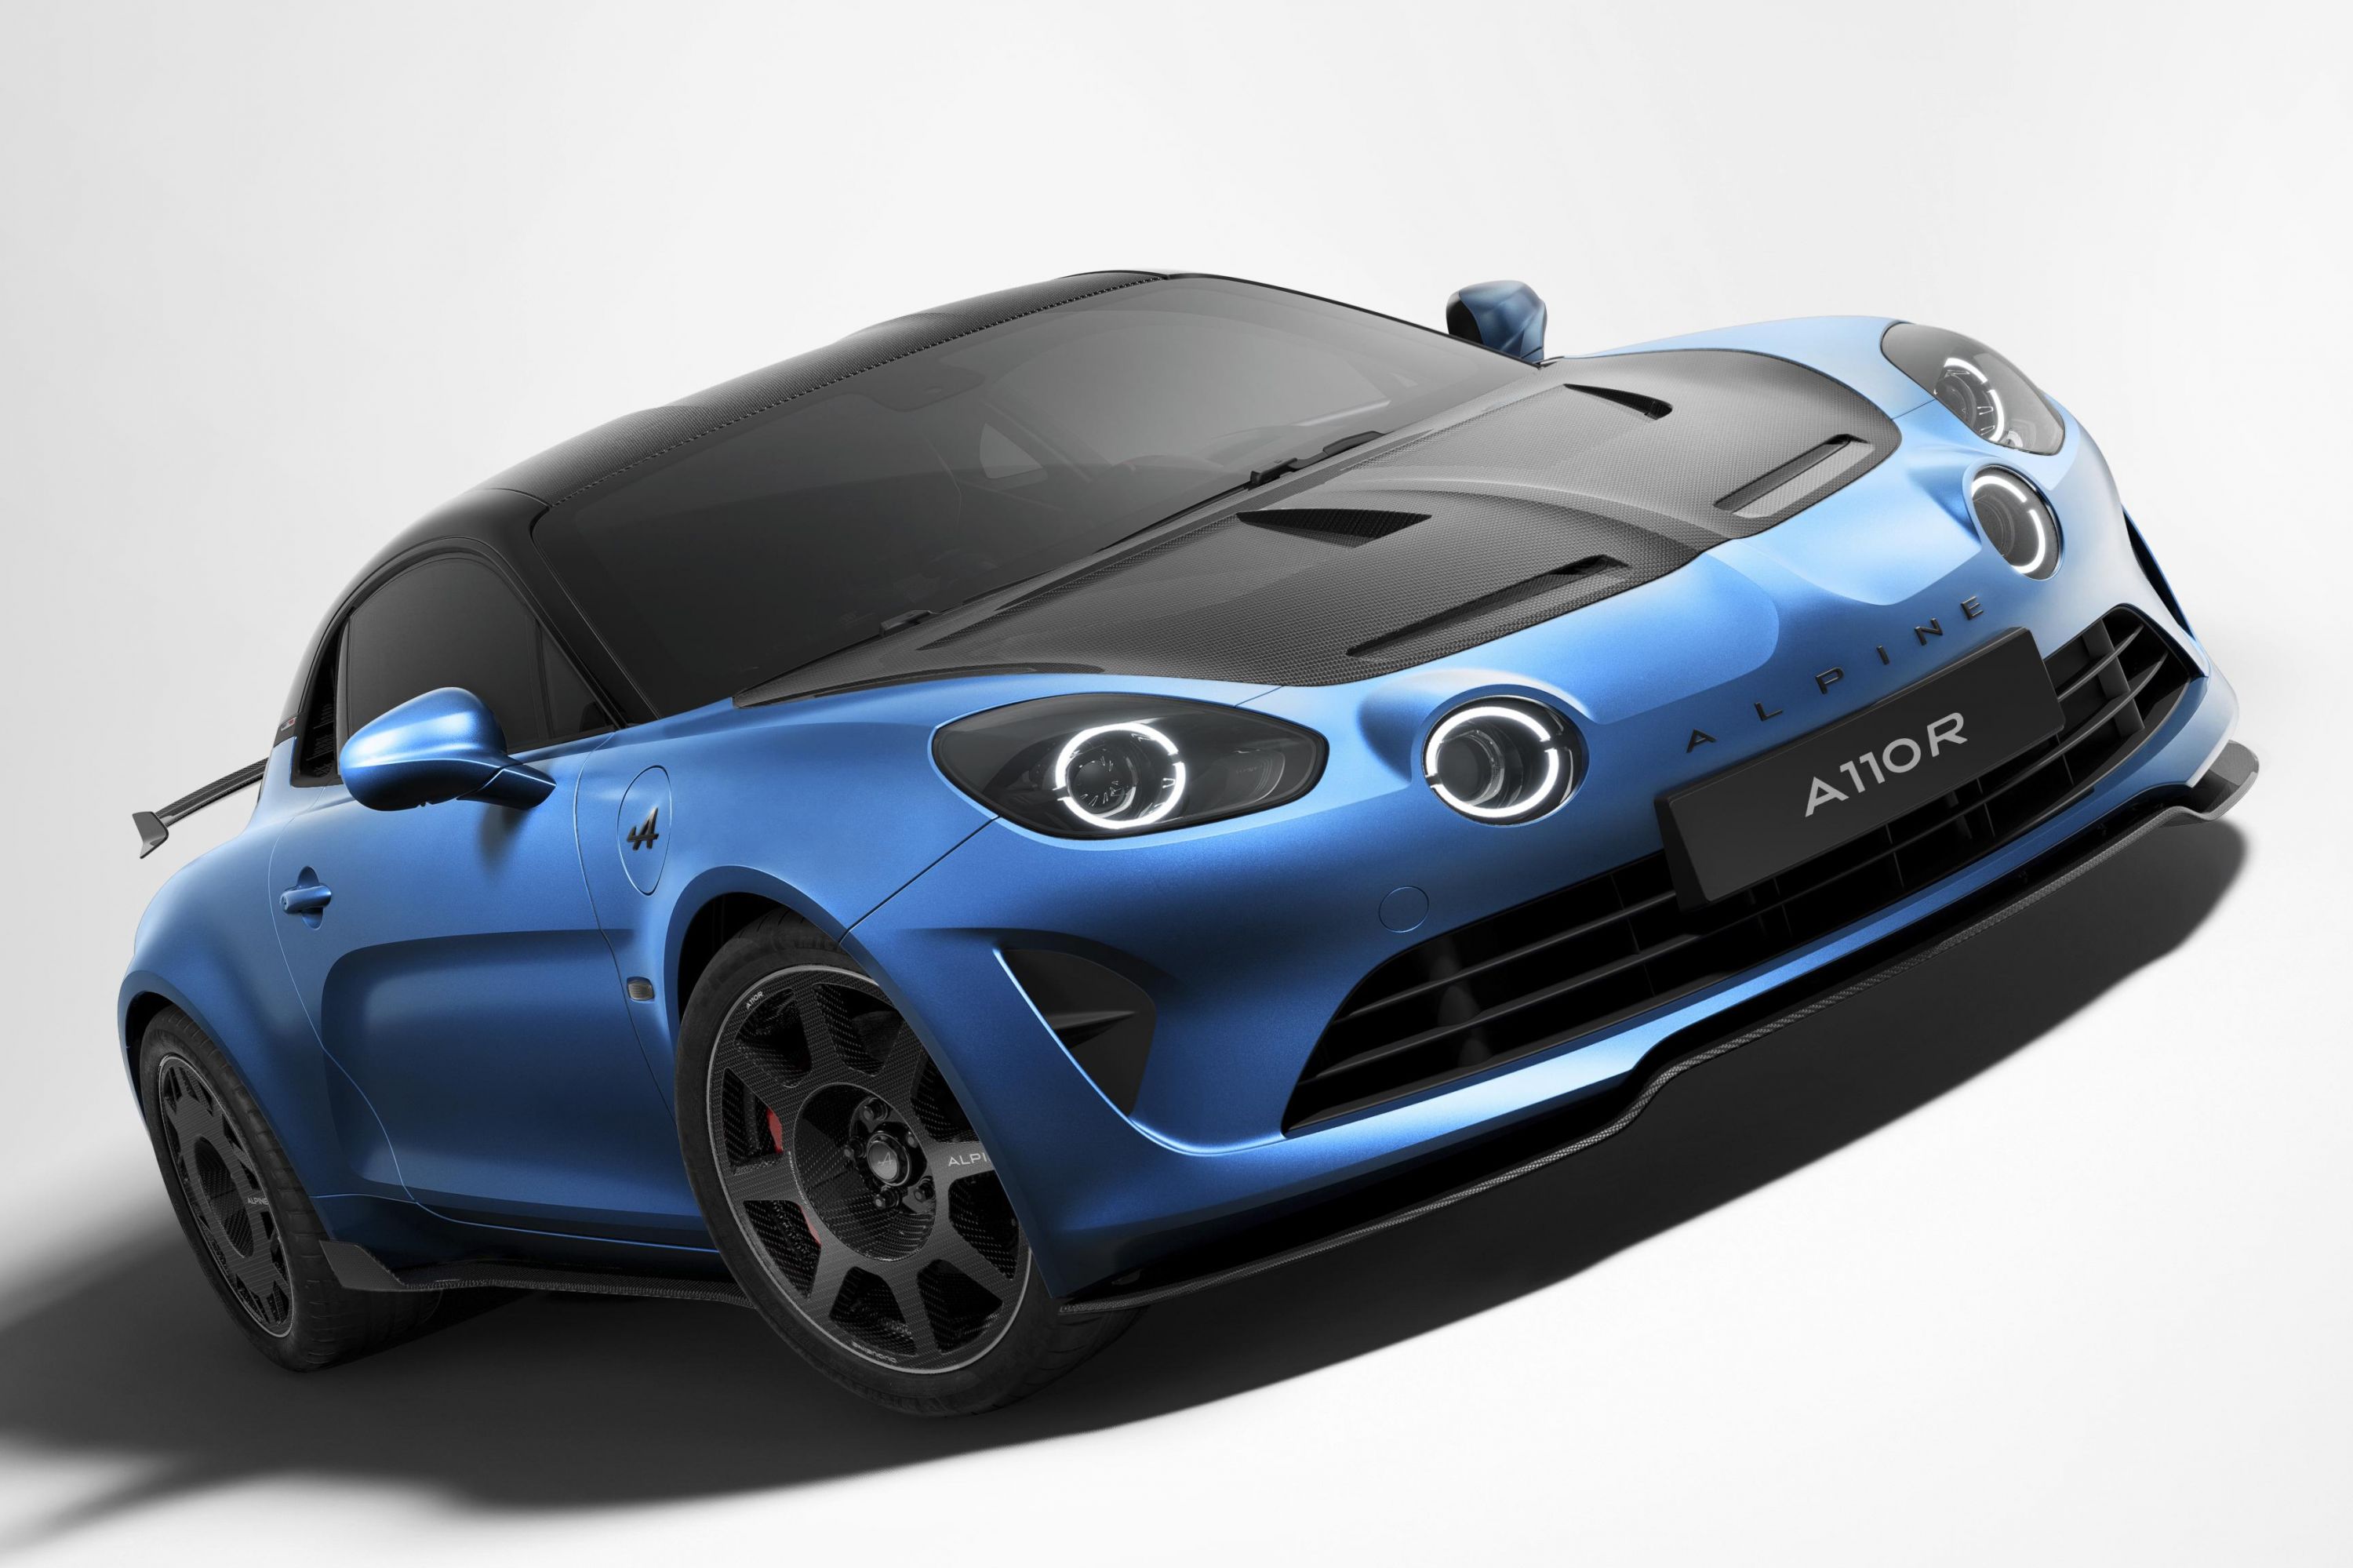 New 2023 Alpine A110 R Le Mans unveiled